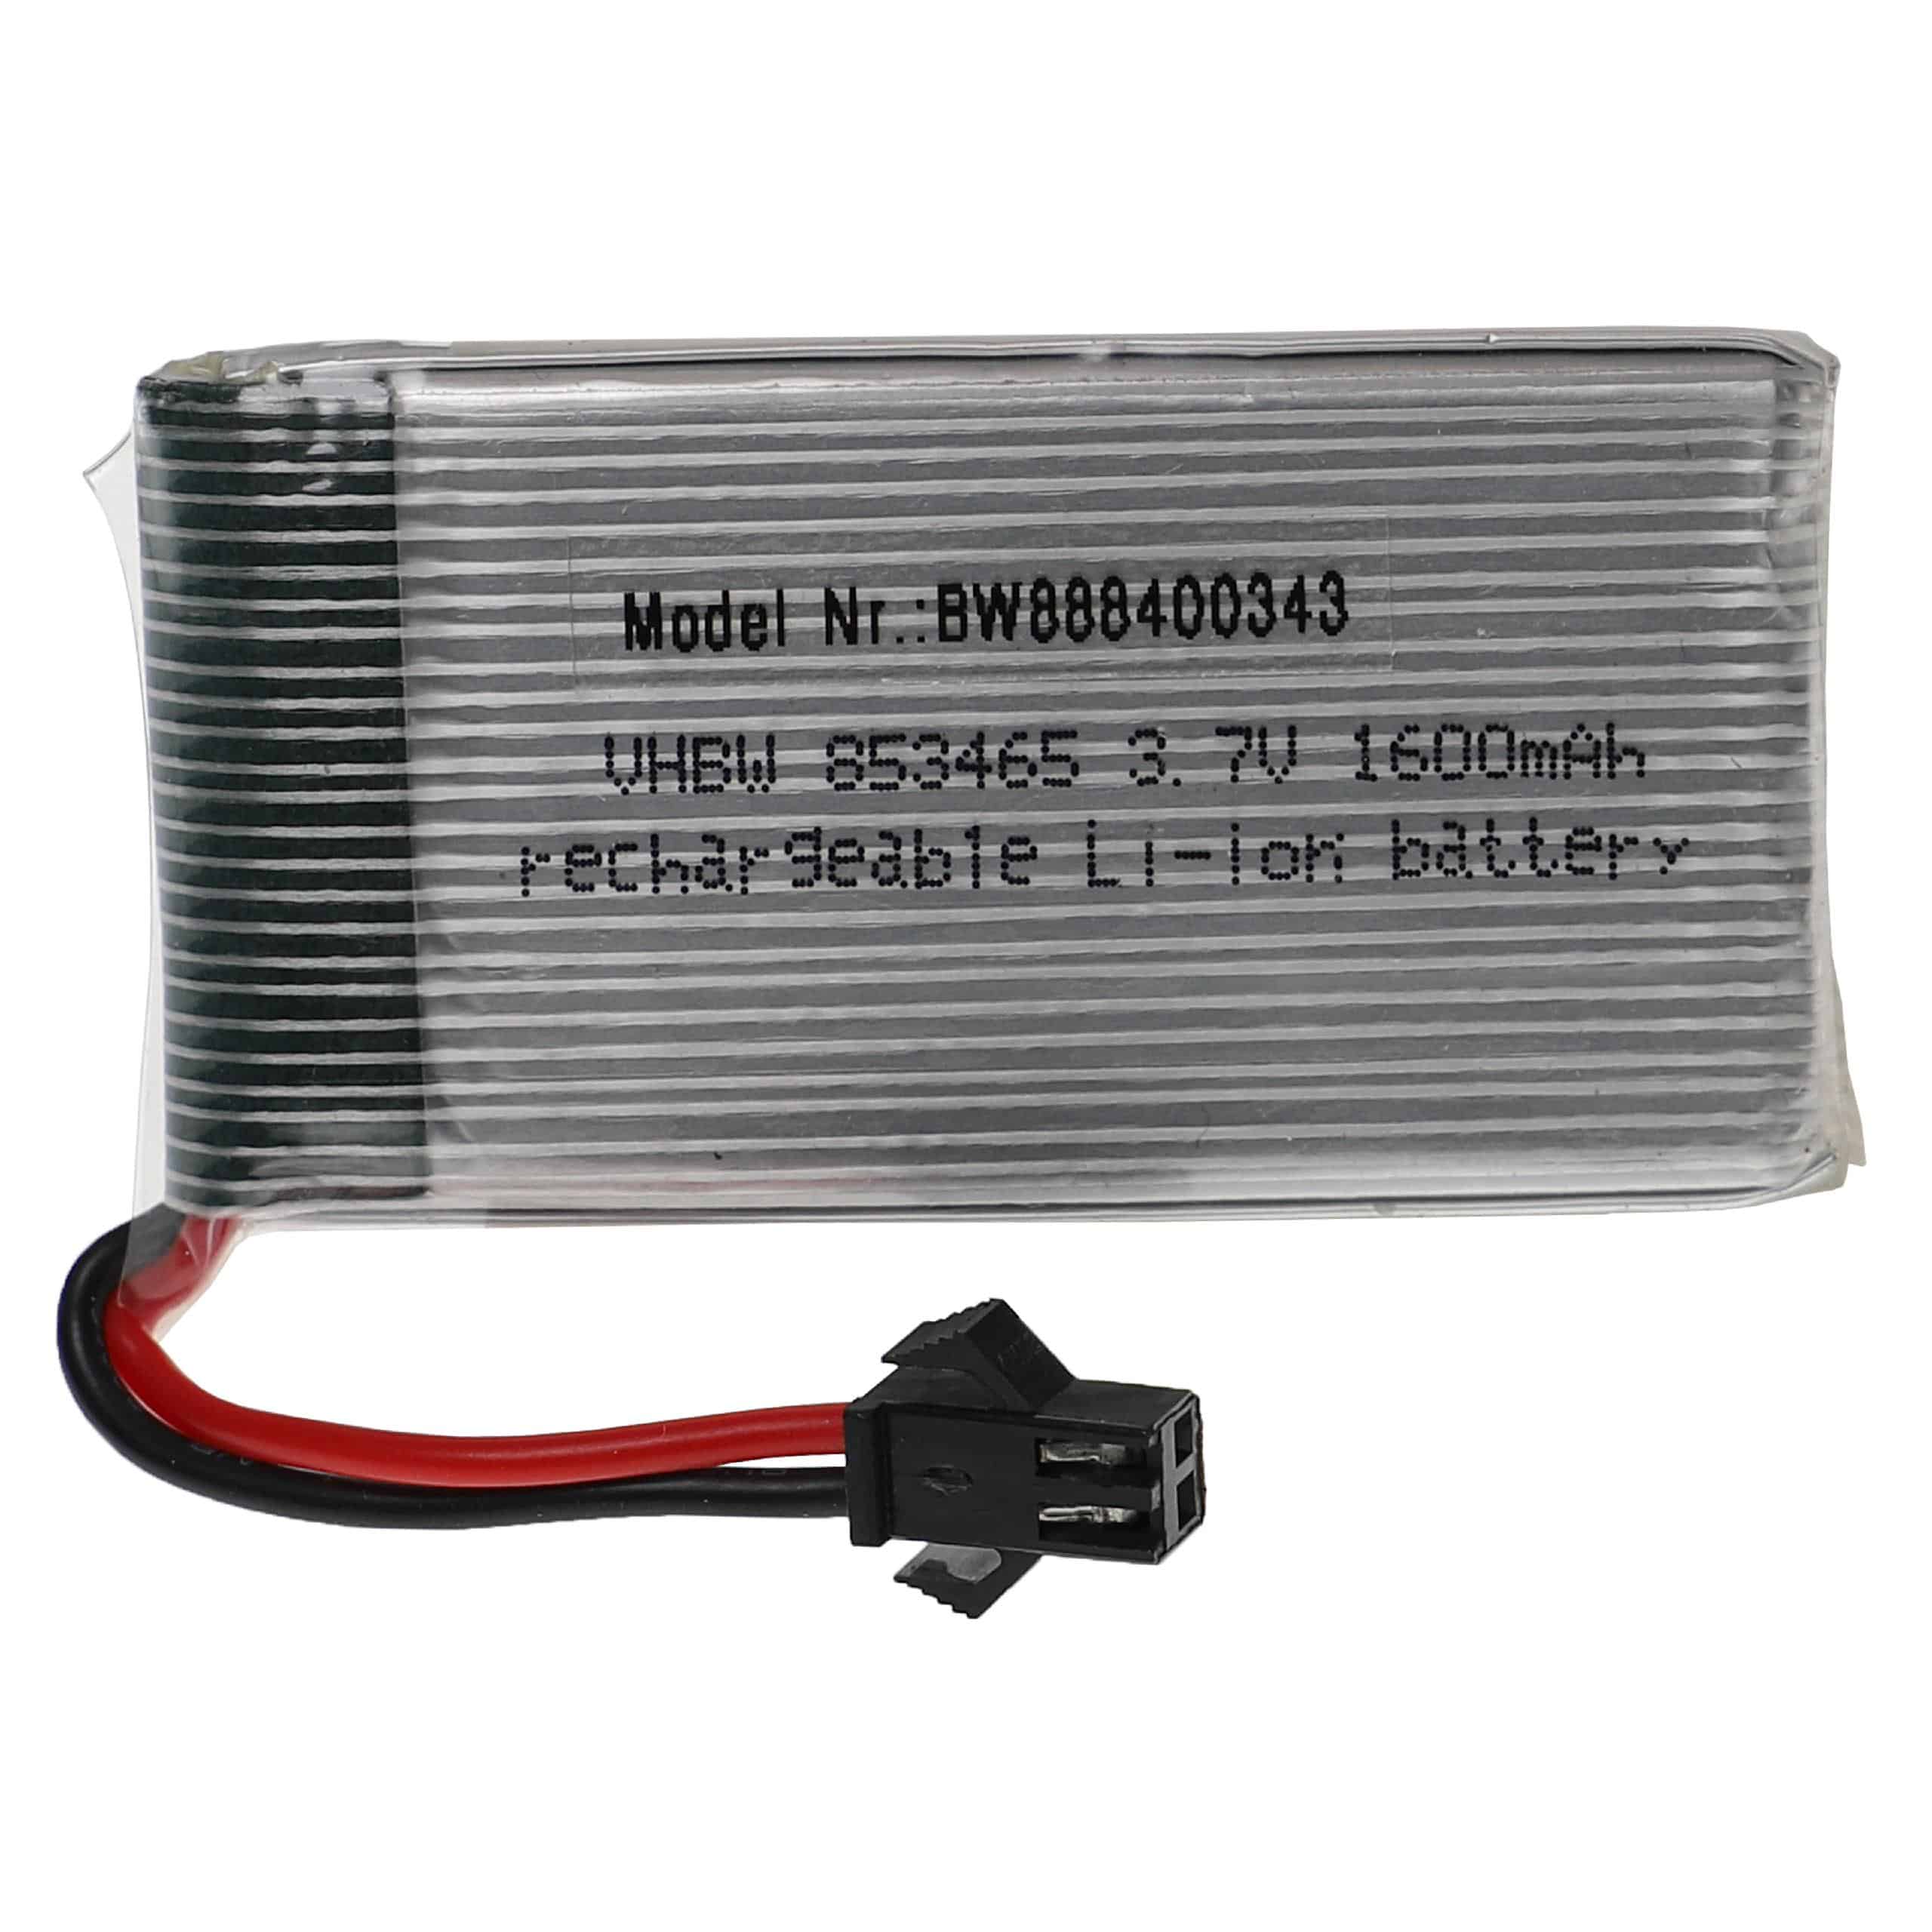 Batería para dispositivos modelismo - 1600 mAh 3,7 V Li-poli, SM-2P